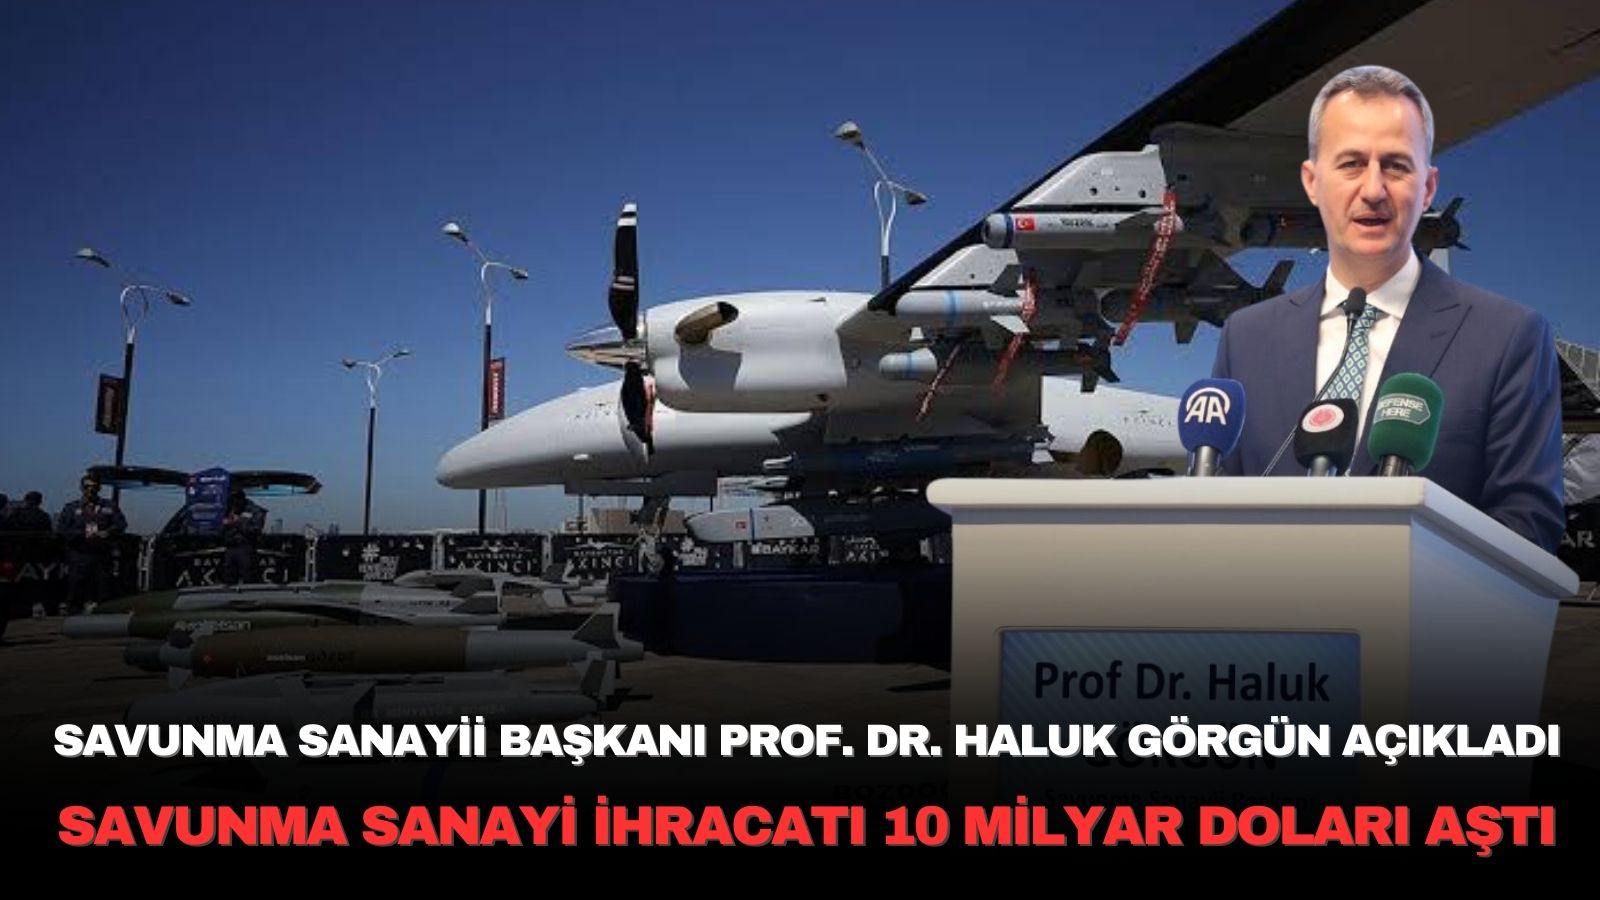 Turkiye-savunma-sanayi-ihracat-rakamlari-aciklandi